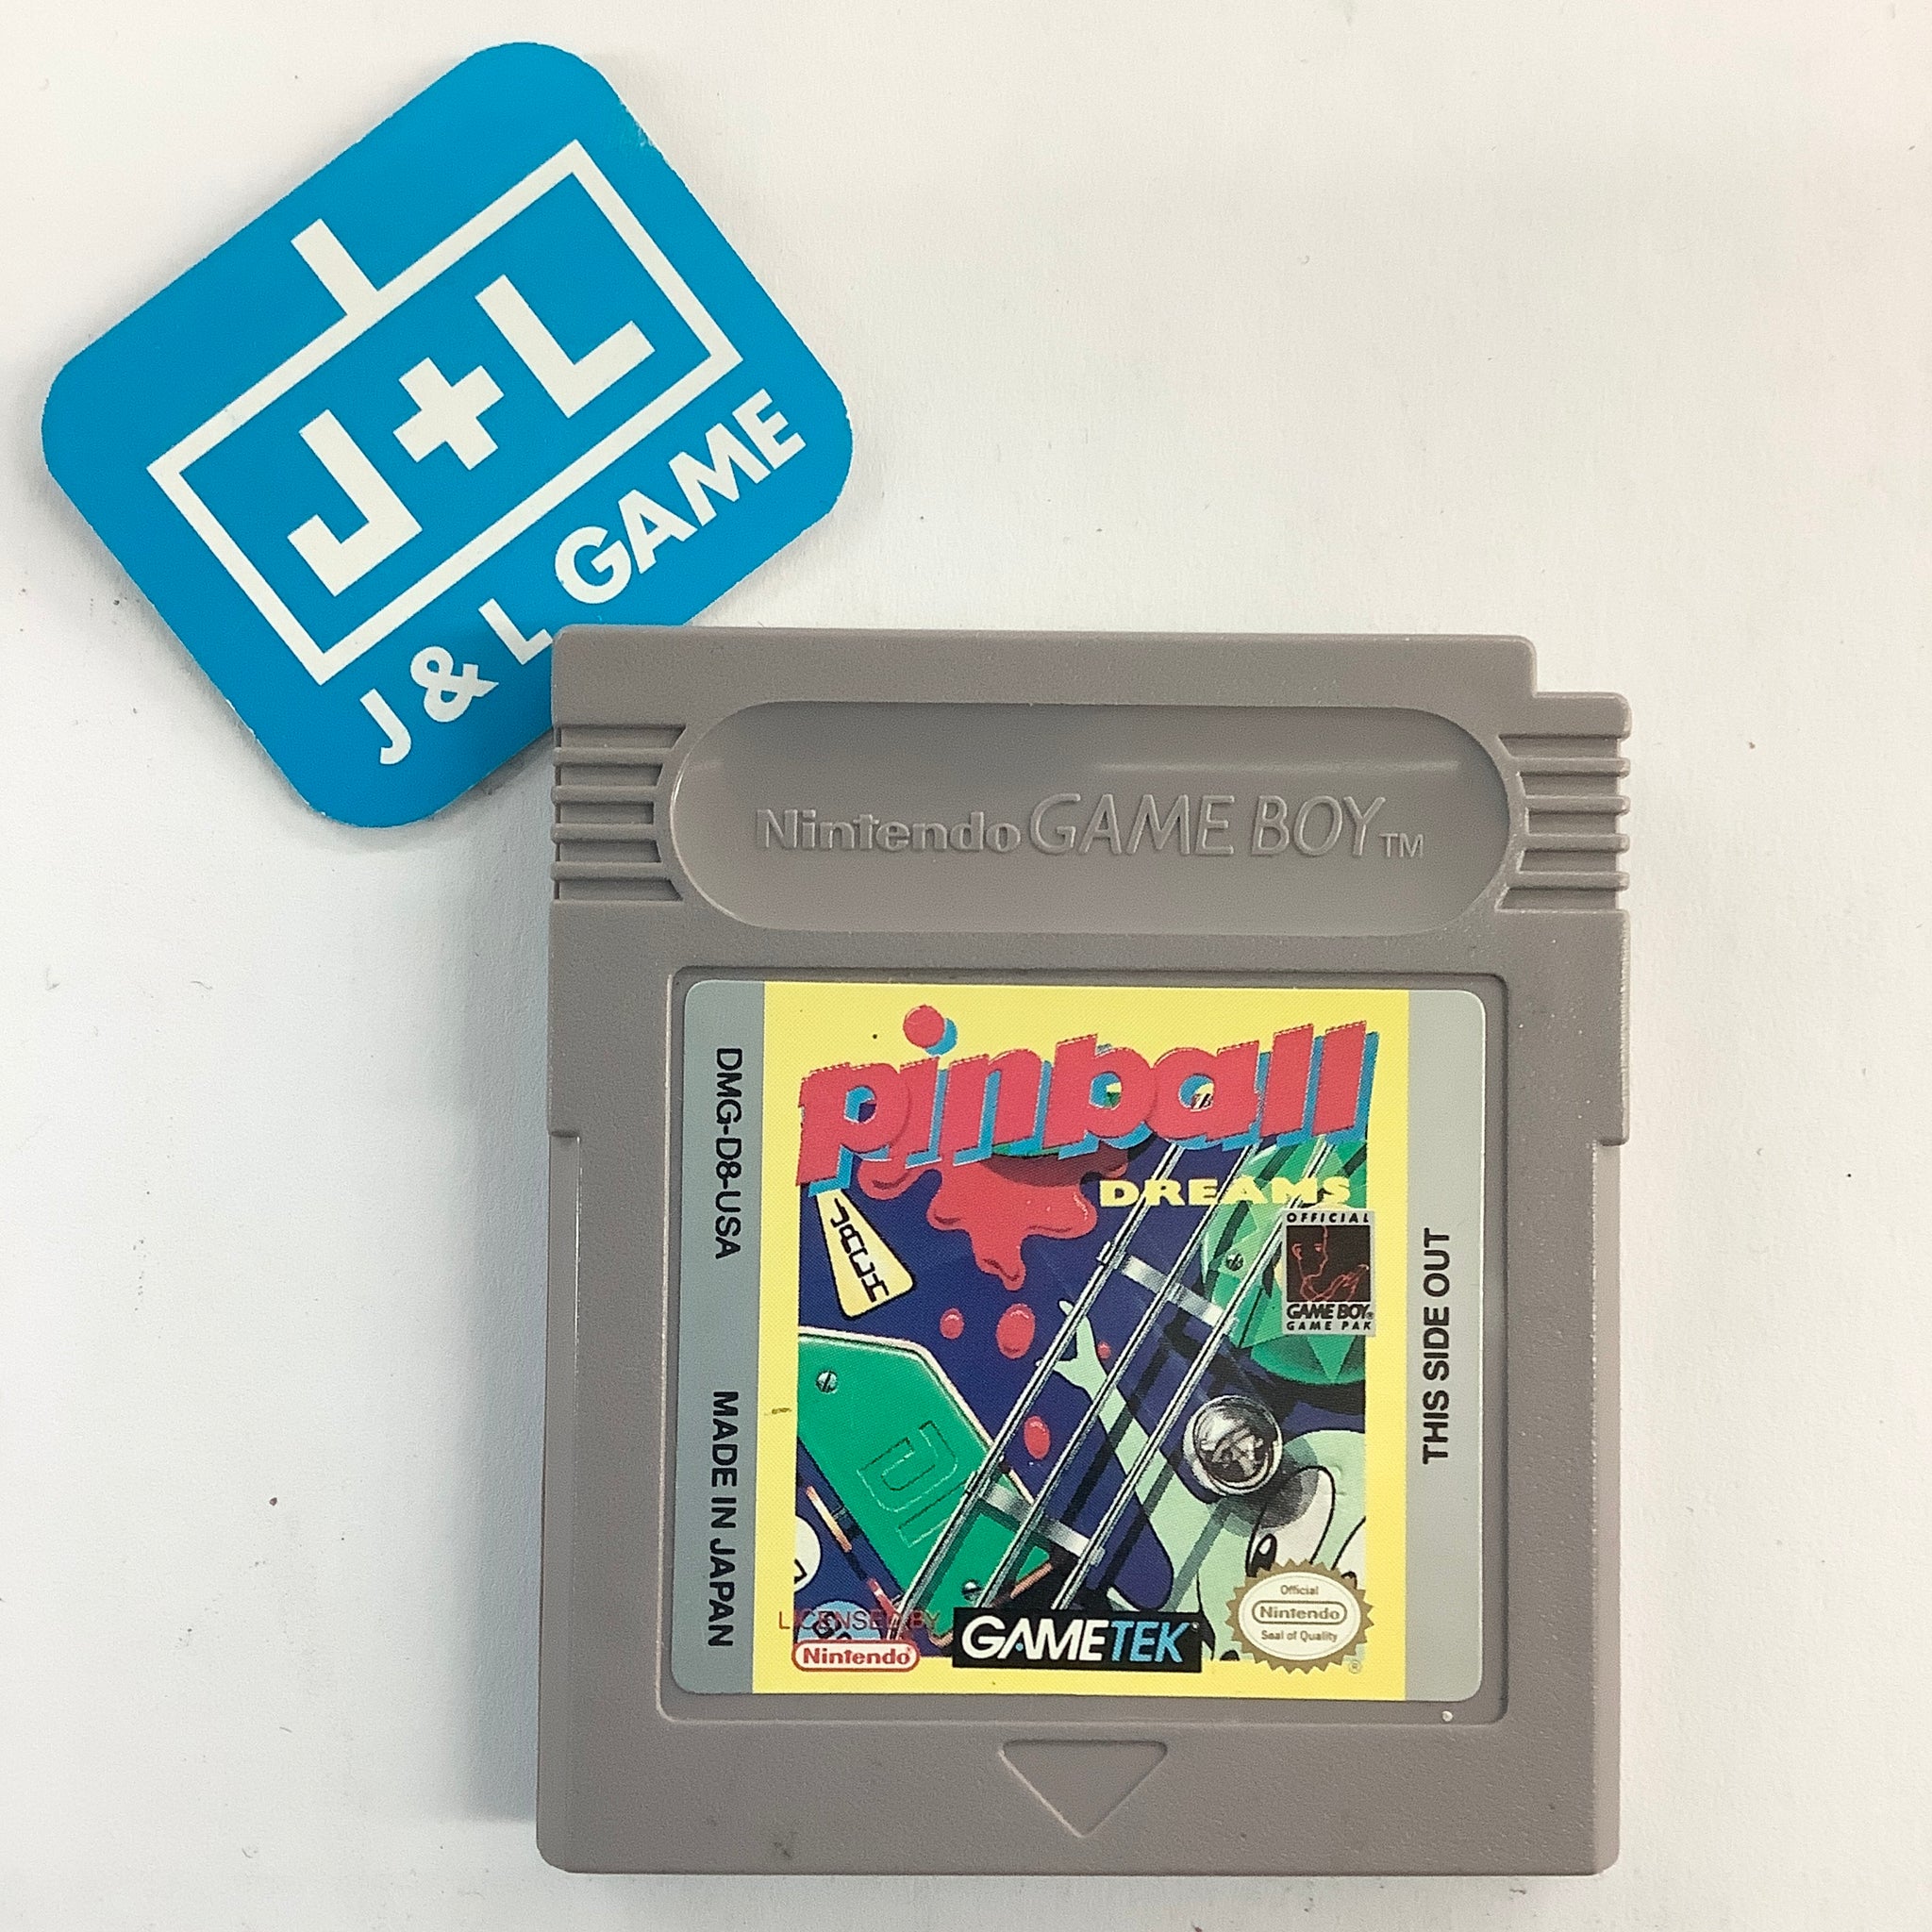 Pinball Dreams - (GB) Game Boy [Pre-Owned] Video Games GameTek   